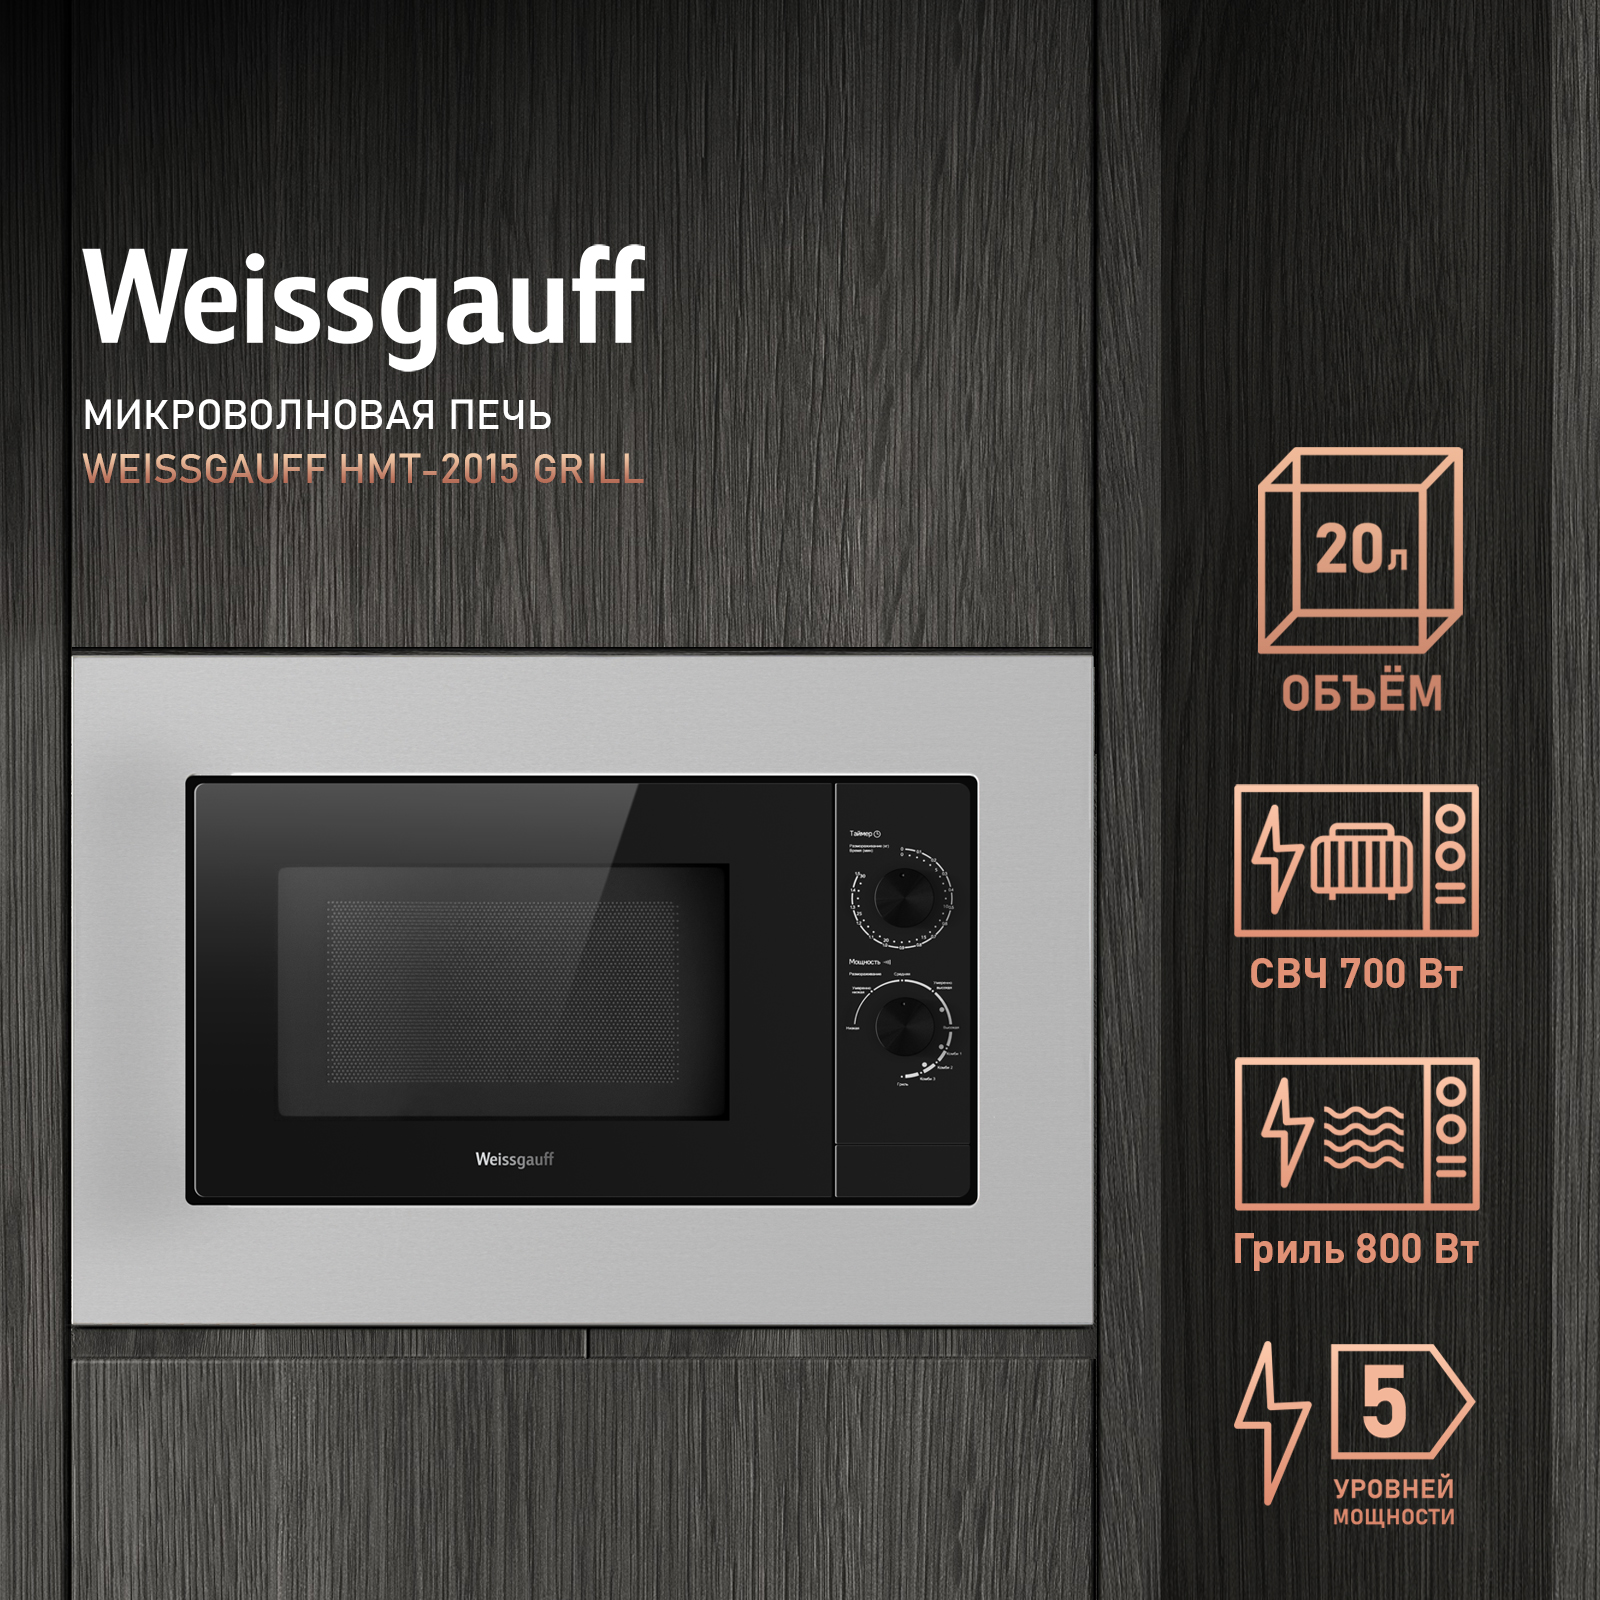 Встраиваемая микроволновая печь Weissgauff HMT-2015 Grill серебристая встраиваемая микроволновая печь weissgauff hmt 2016 grill черная